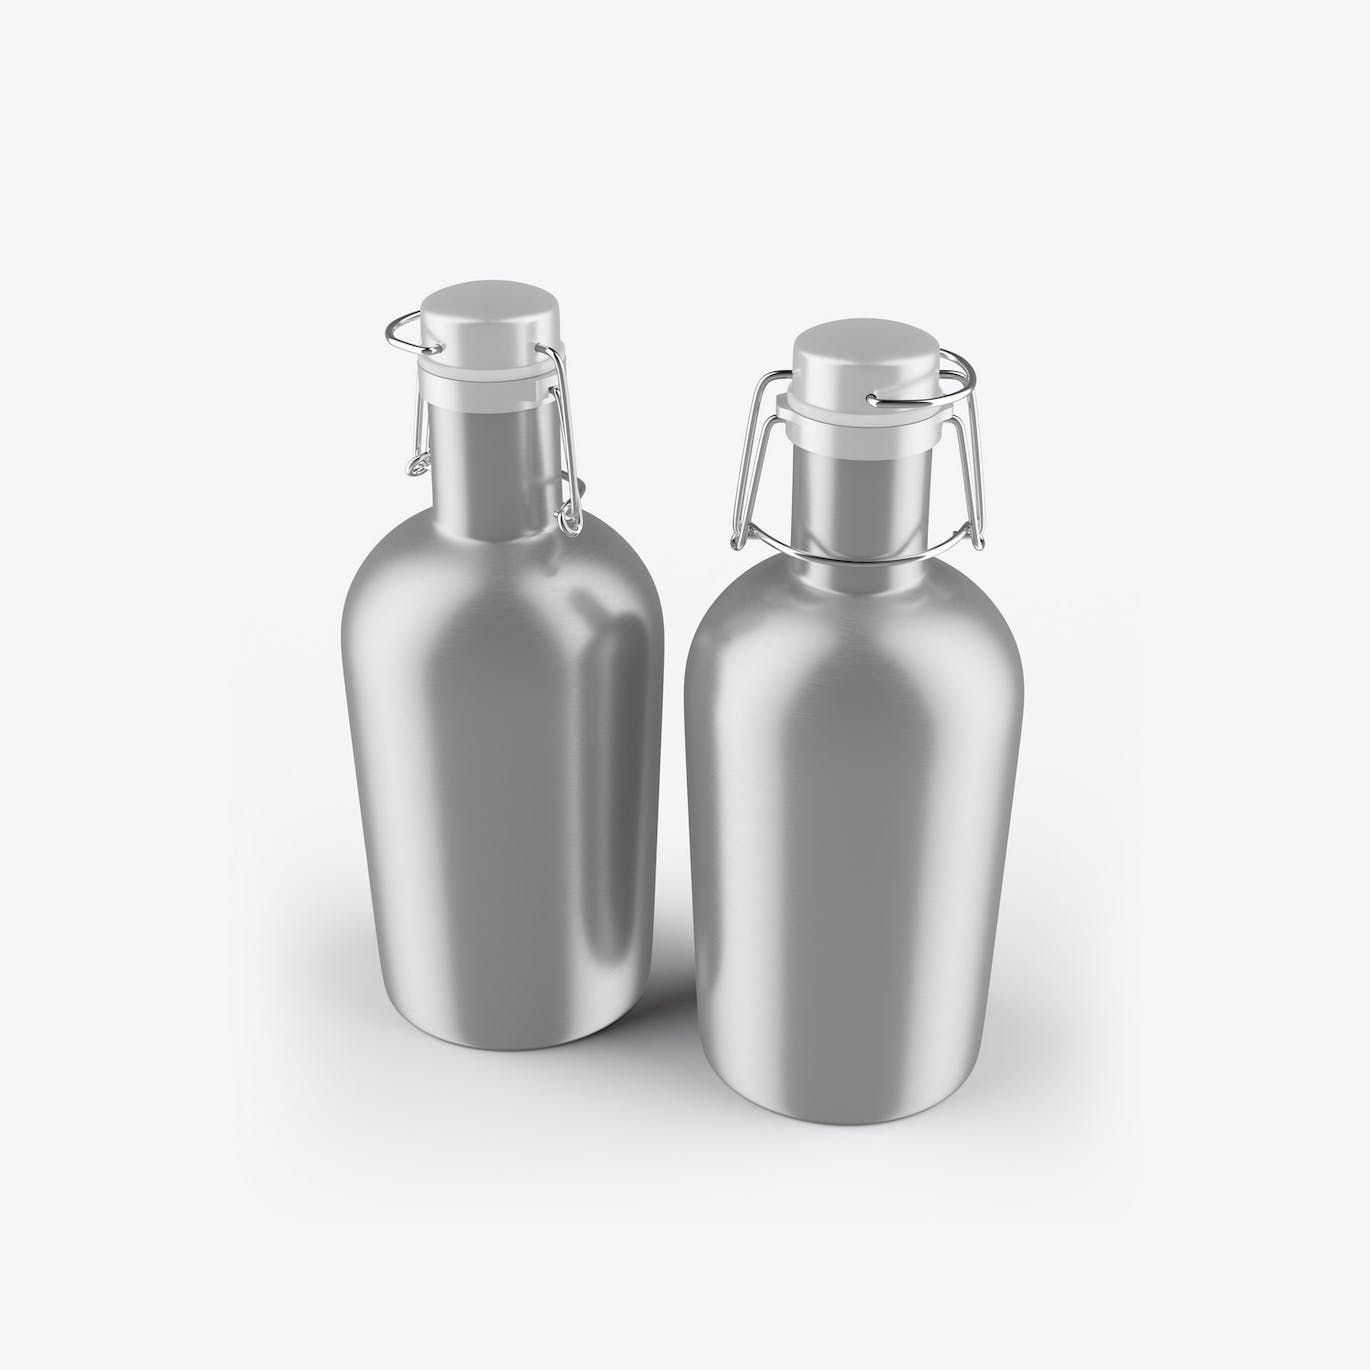 金属保温瓶外观设计样机 Metallic Thermo Bottle Mockup 样机素材 第2张